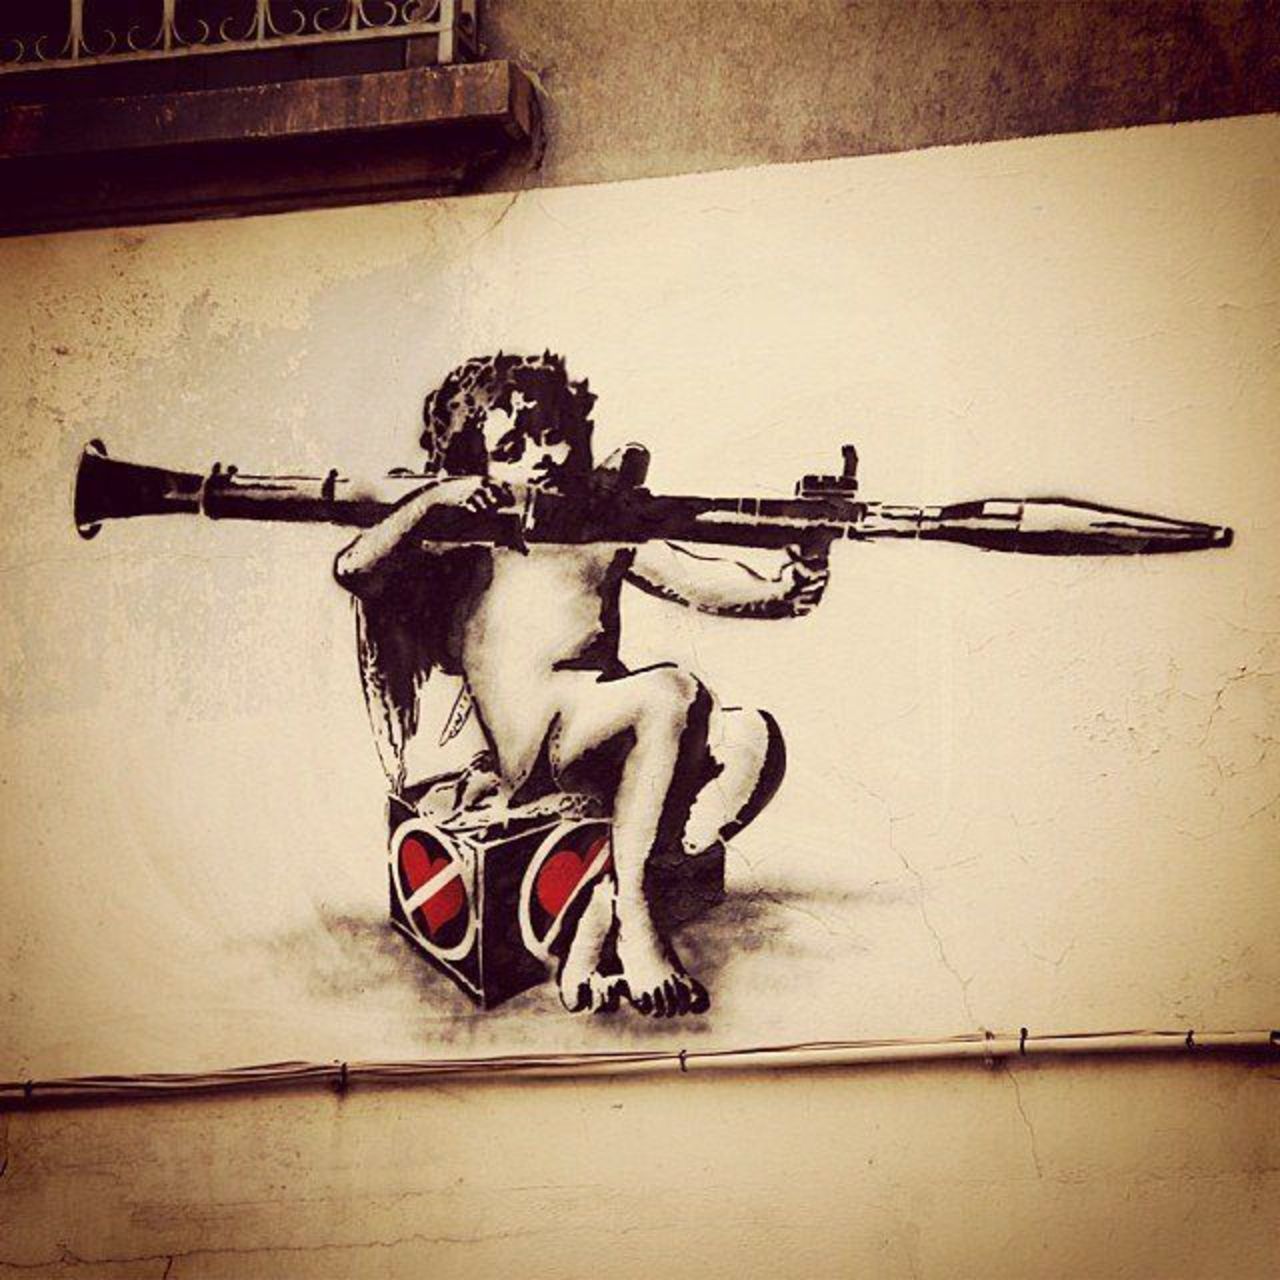 Street Art by Going in Grenoble, France - "Heartbreaker" #streetart #mural #graffiti #art https://t.co/EpFFfYg84J